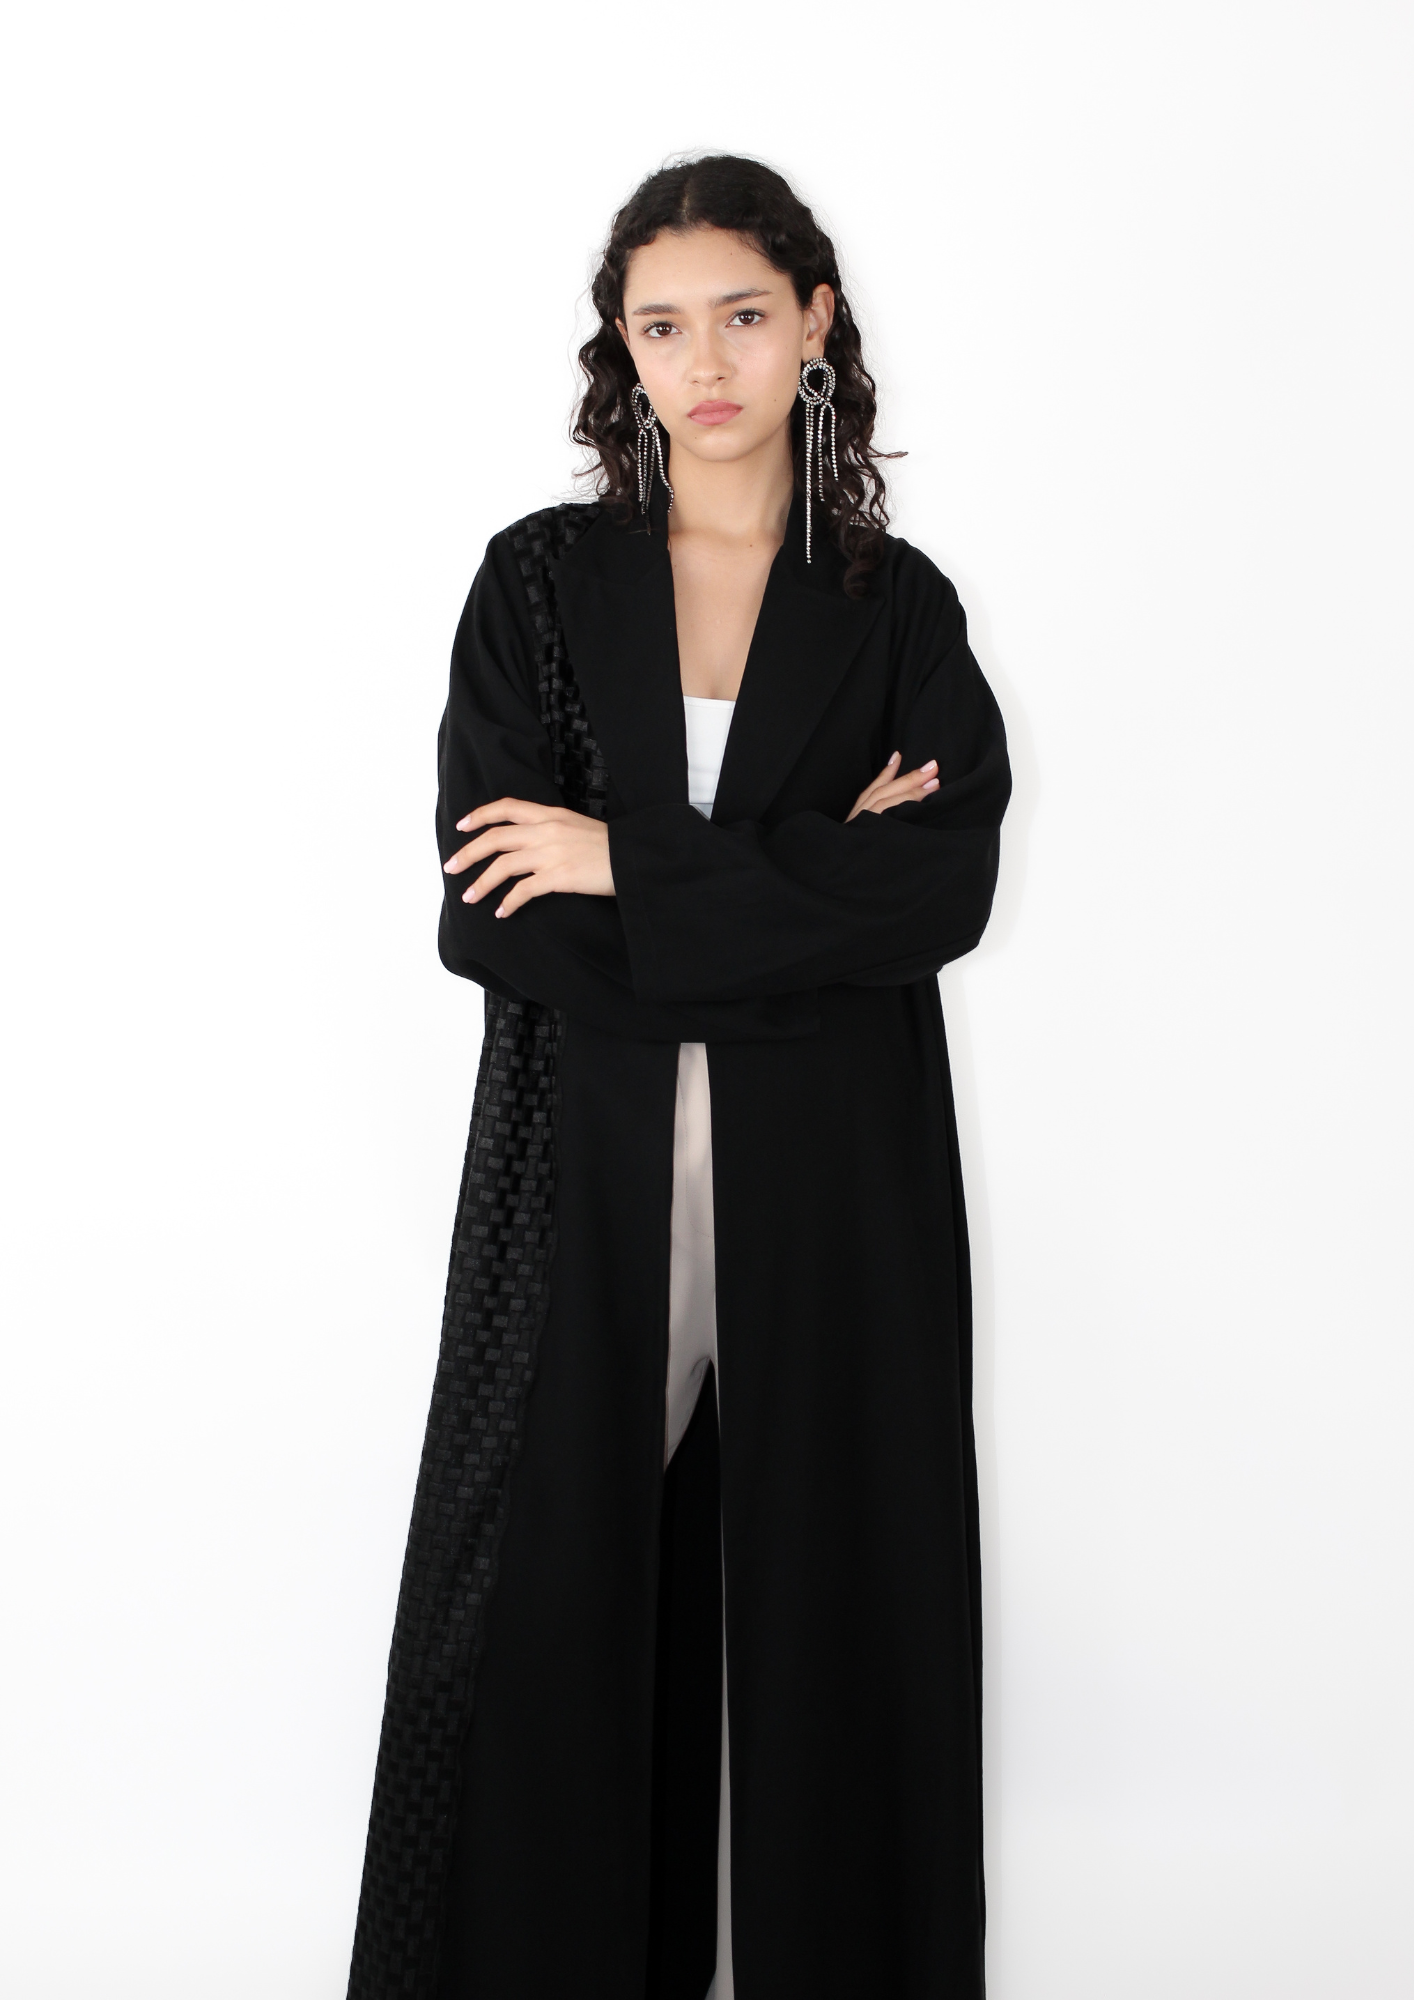 Peak Lapel Abaya With Black Box Lace – Hessa Falasi